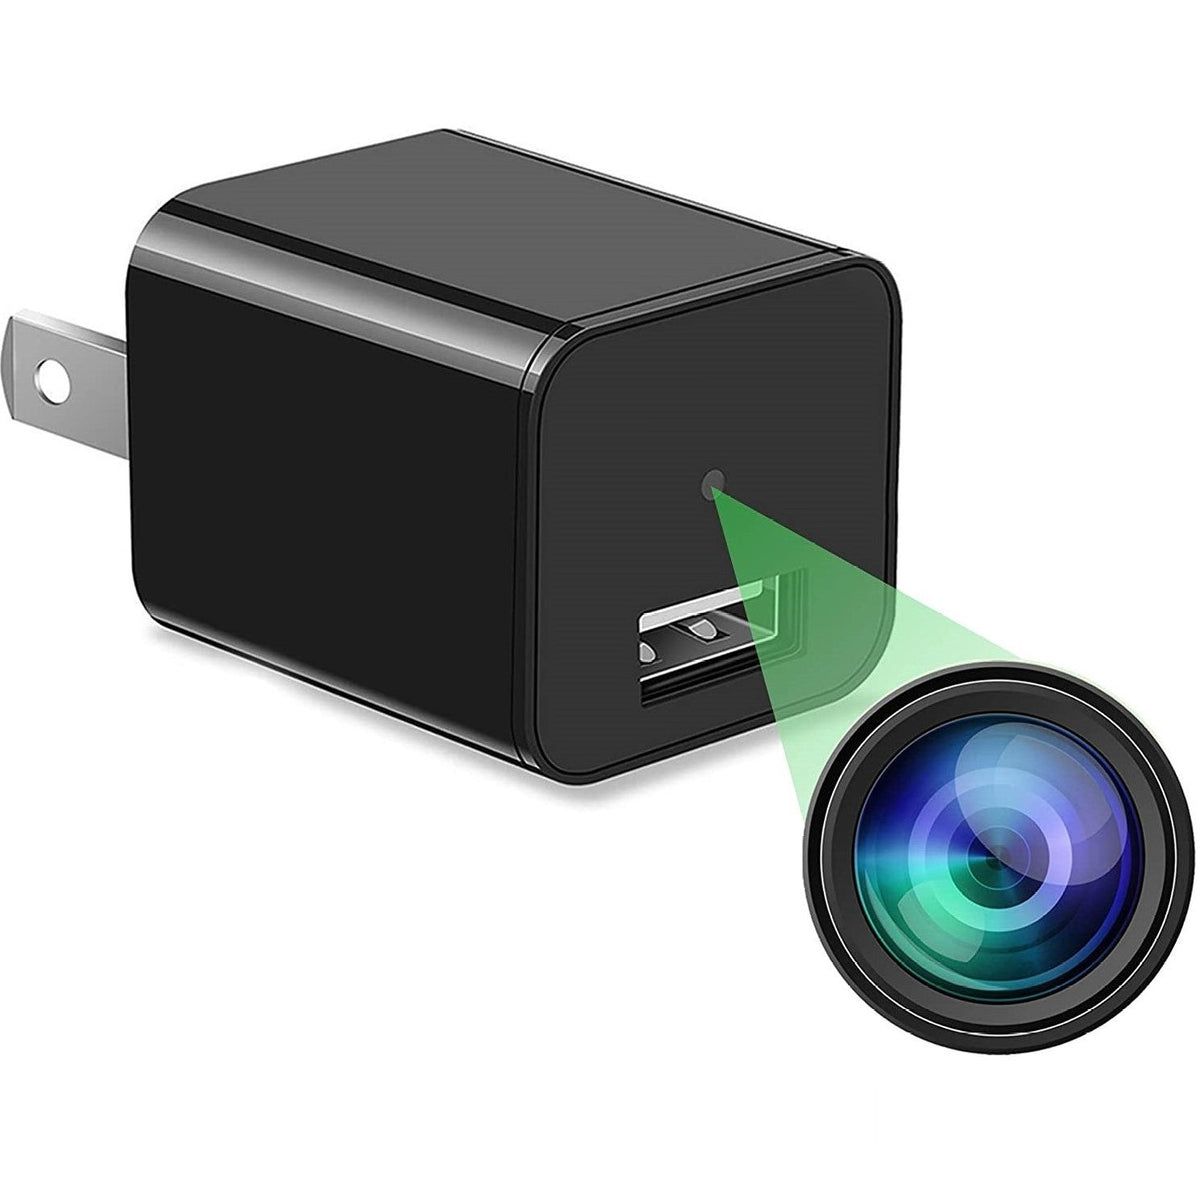 Spy Cameras | Hidden Camera | The Home Security Superstore